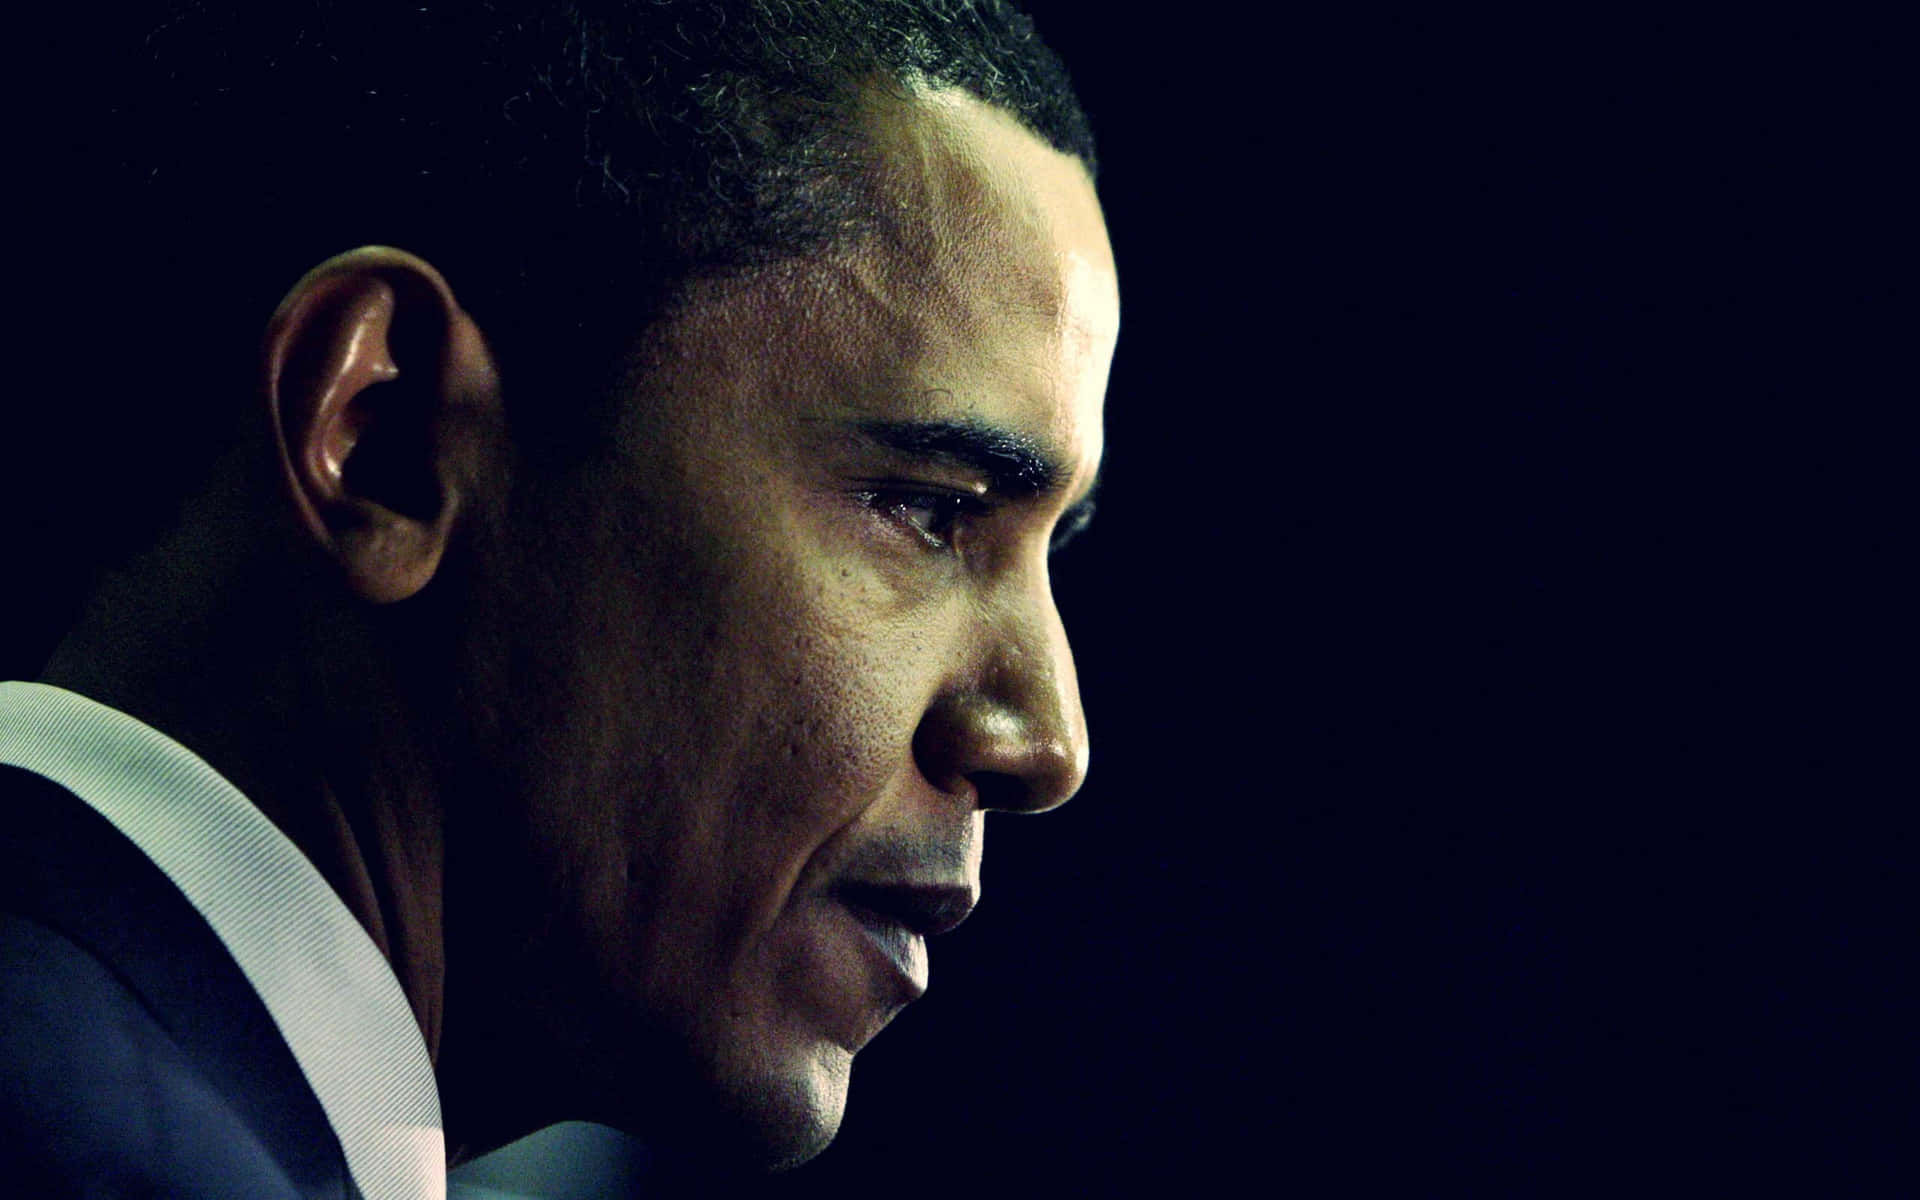 Einporträt Von Barack Obama, Dem 44. Präsidenten Der Vereinigten Staaten.